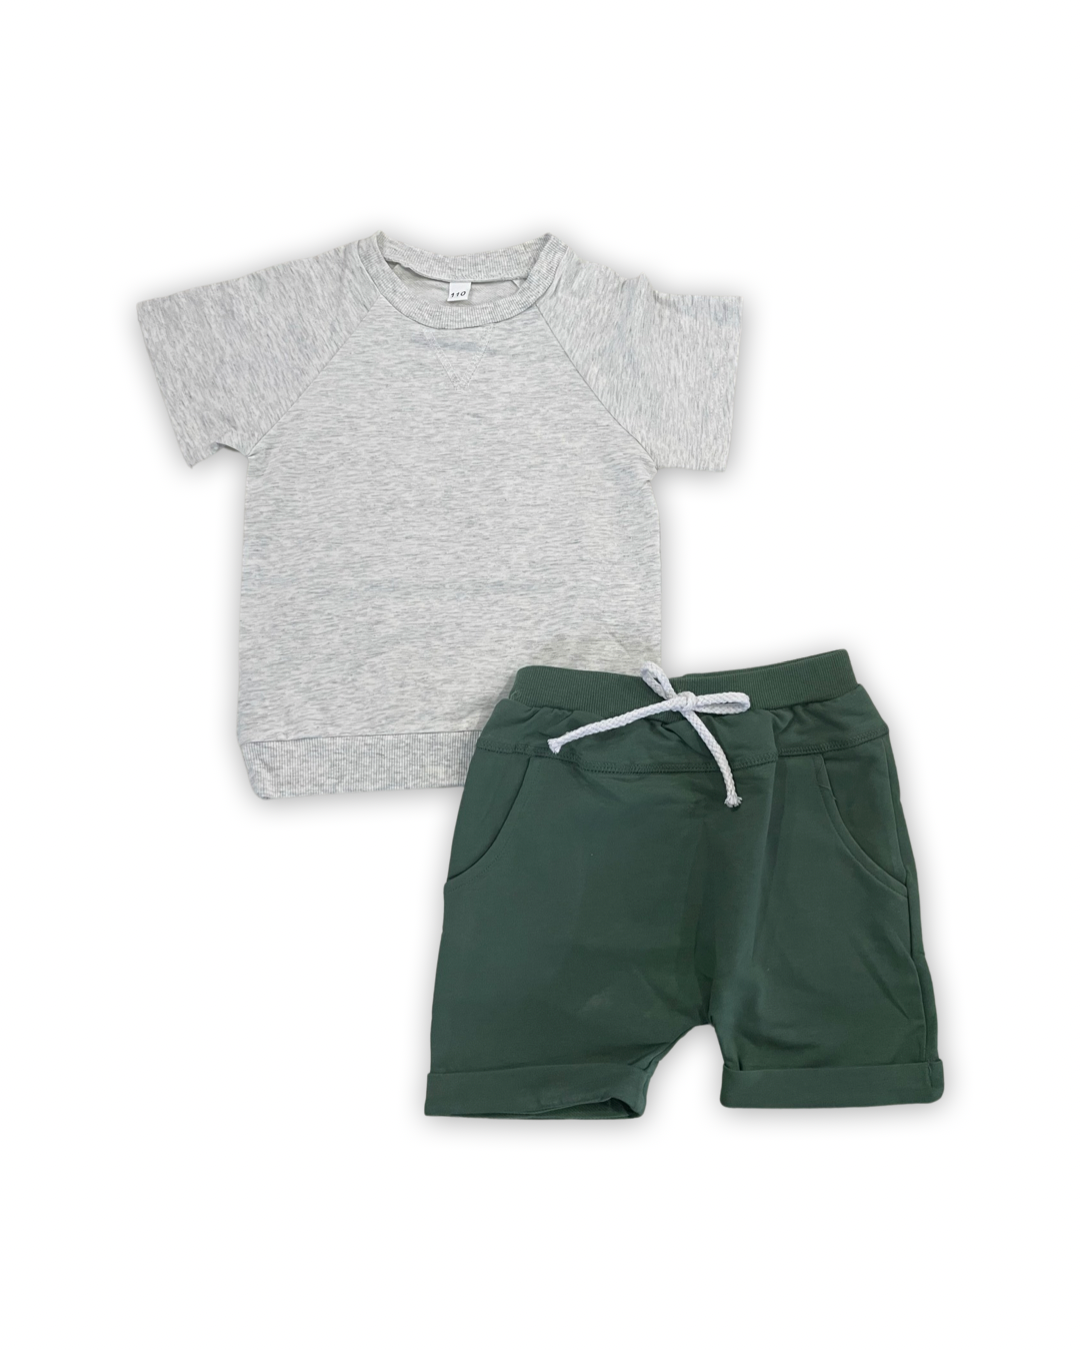 Gray and Green Shorts Set